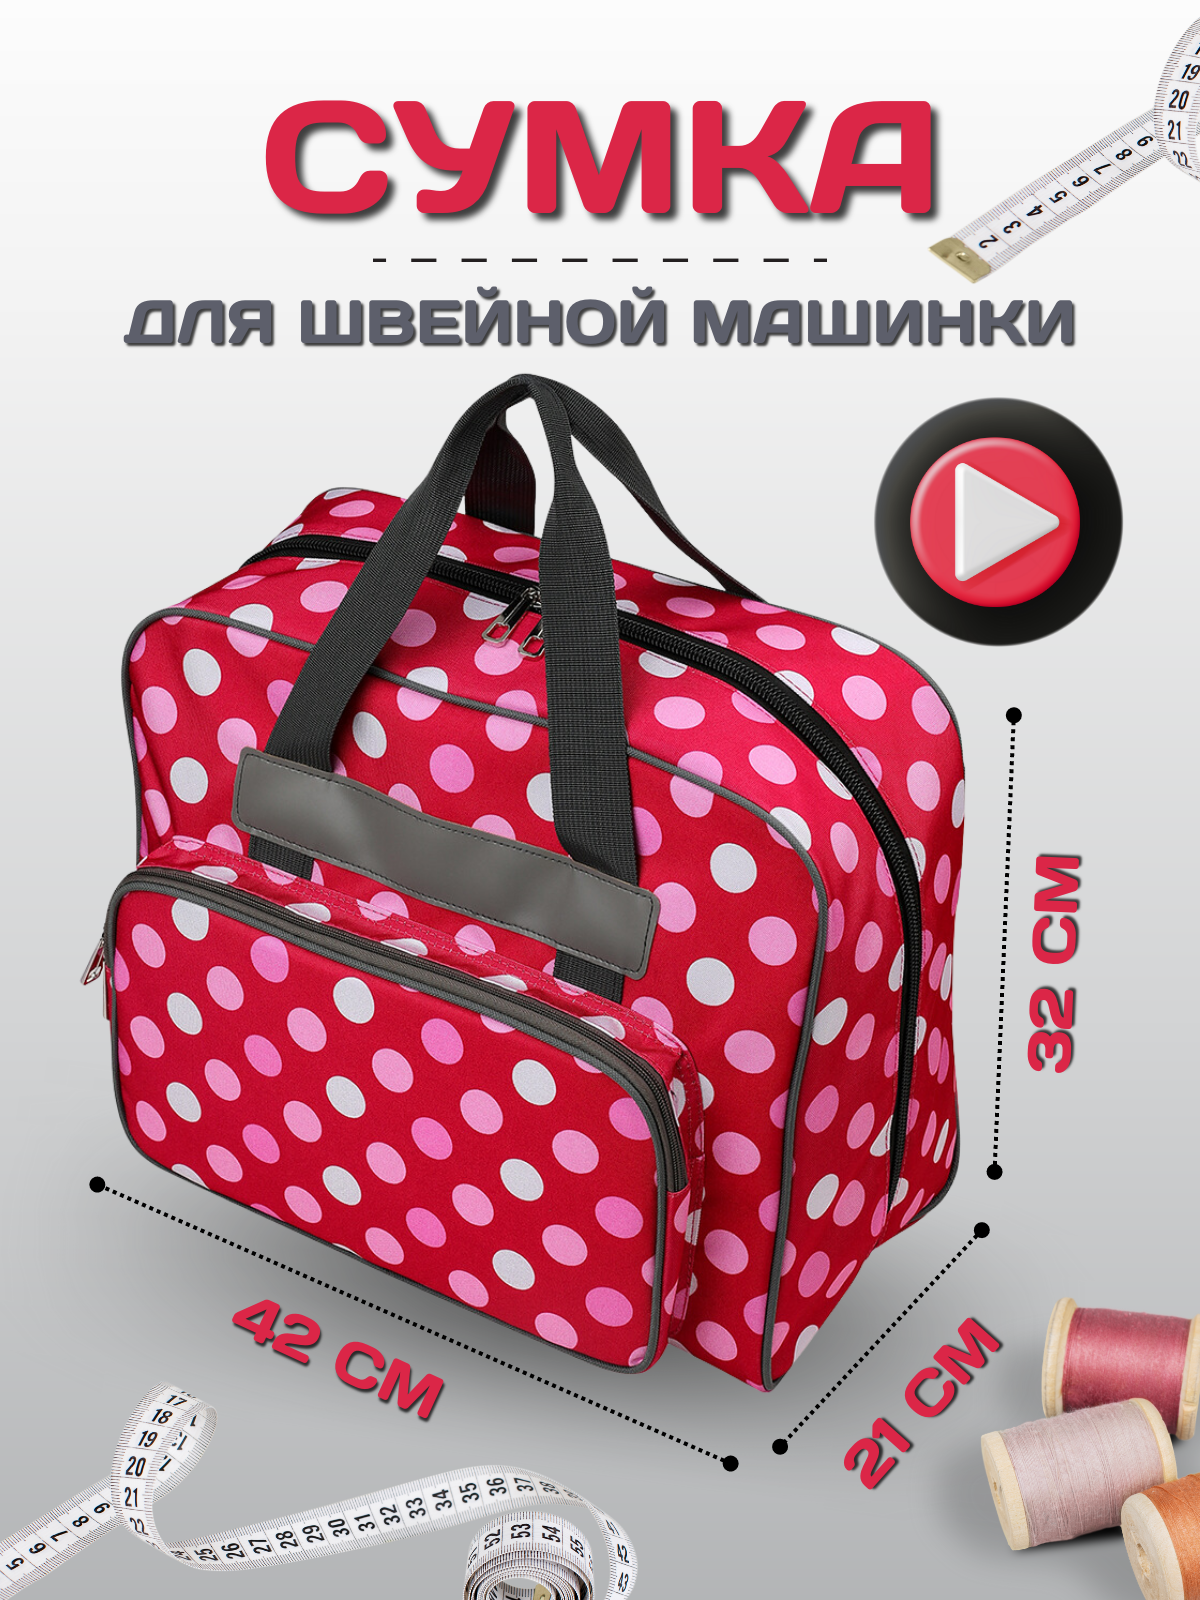 Сумка для швейной машинки, проектная сумка, красная в белый горошек, 42х21х32 см.